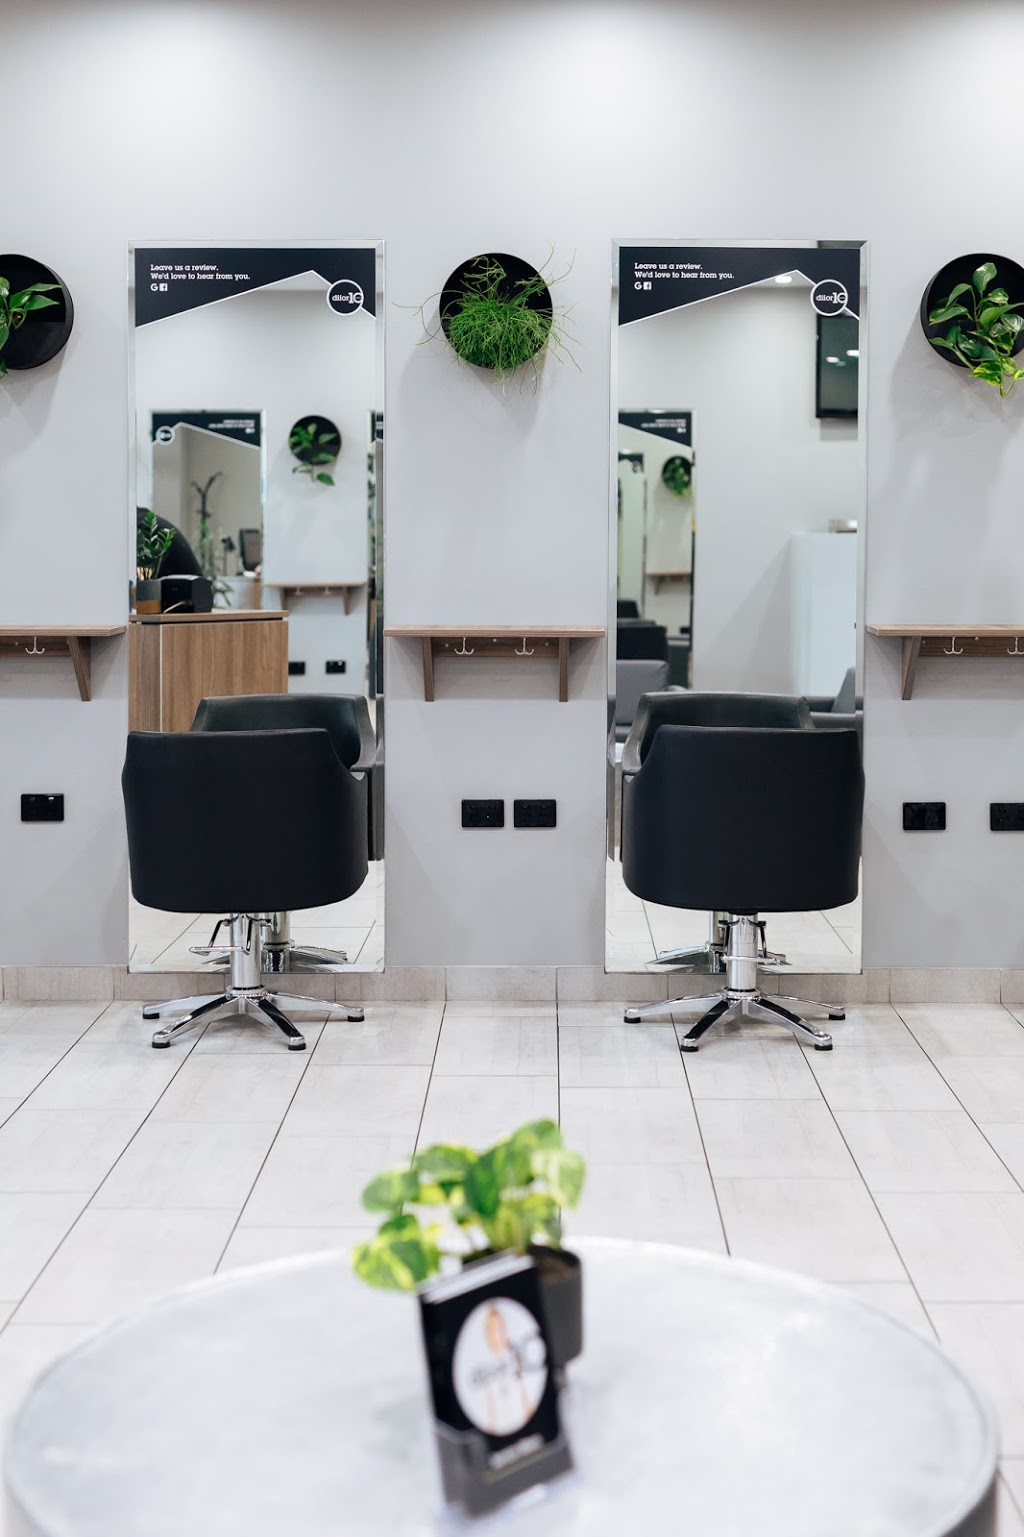 Diior10 Salon | hair care | 53/57-59 Mimosa Rd, Bossley Park NSW 2176, Australia | 0298234143 OR +61 2 9823 4143